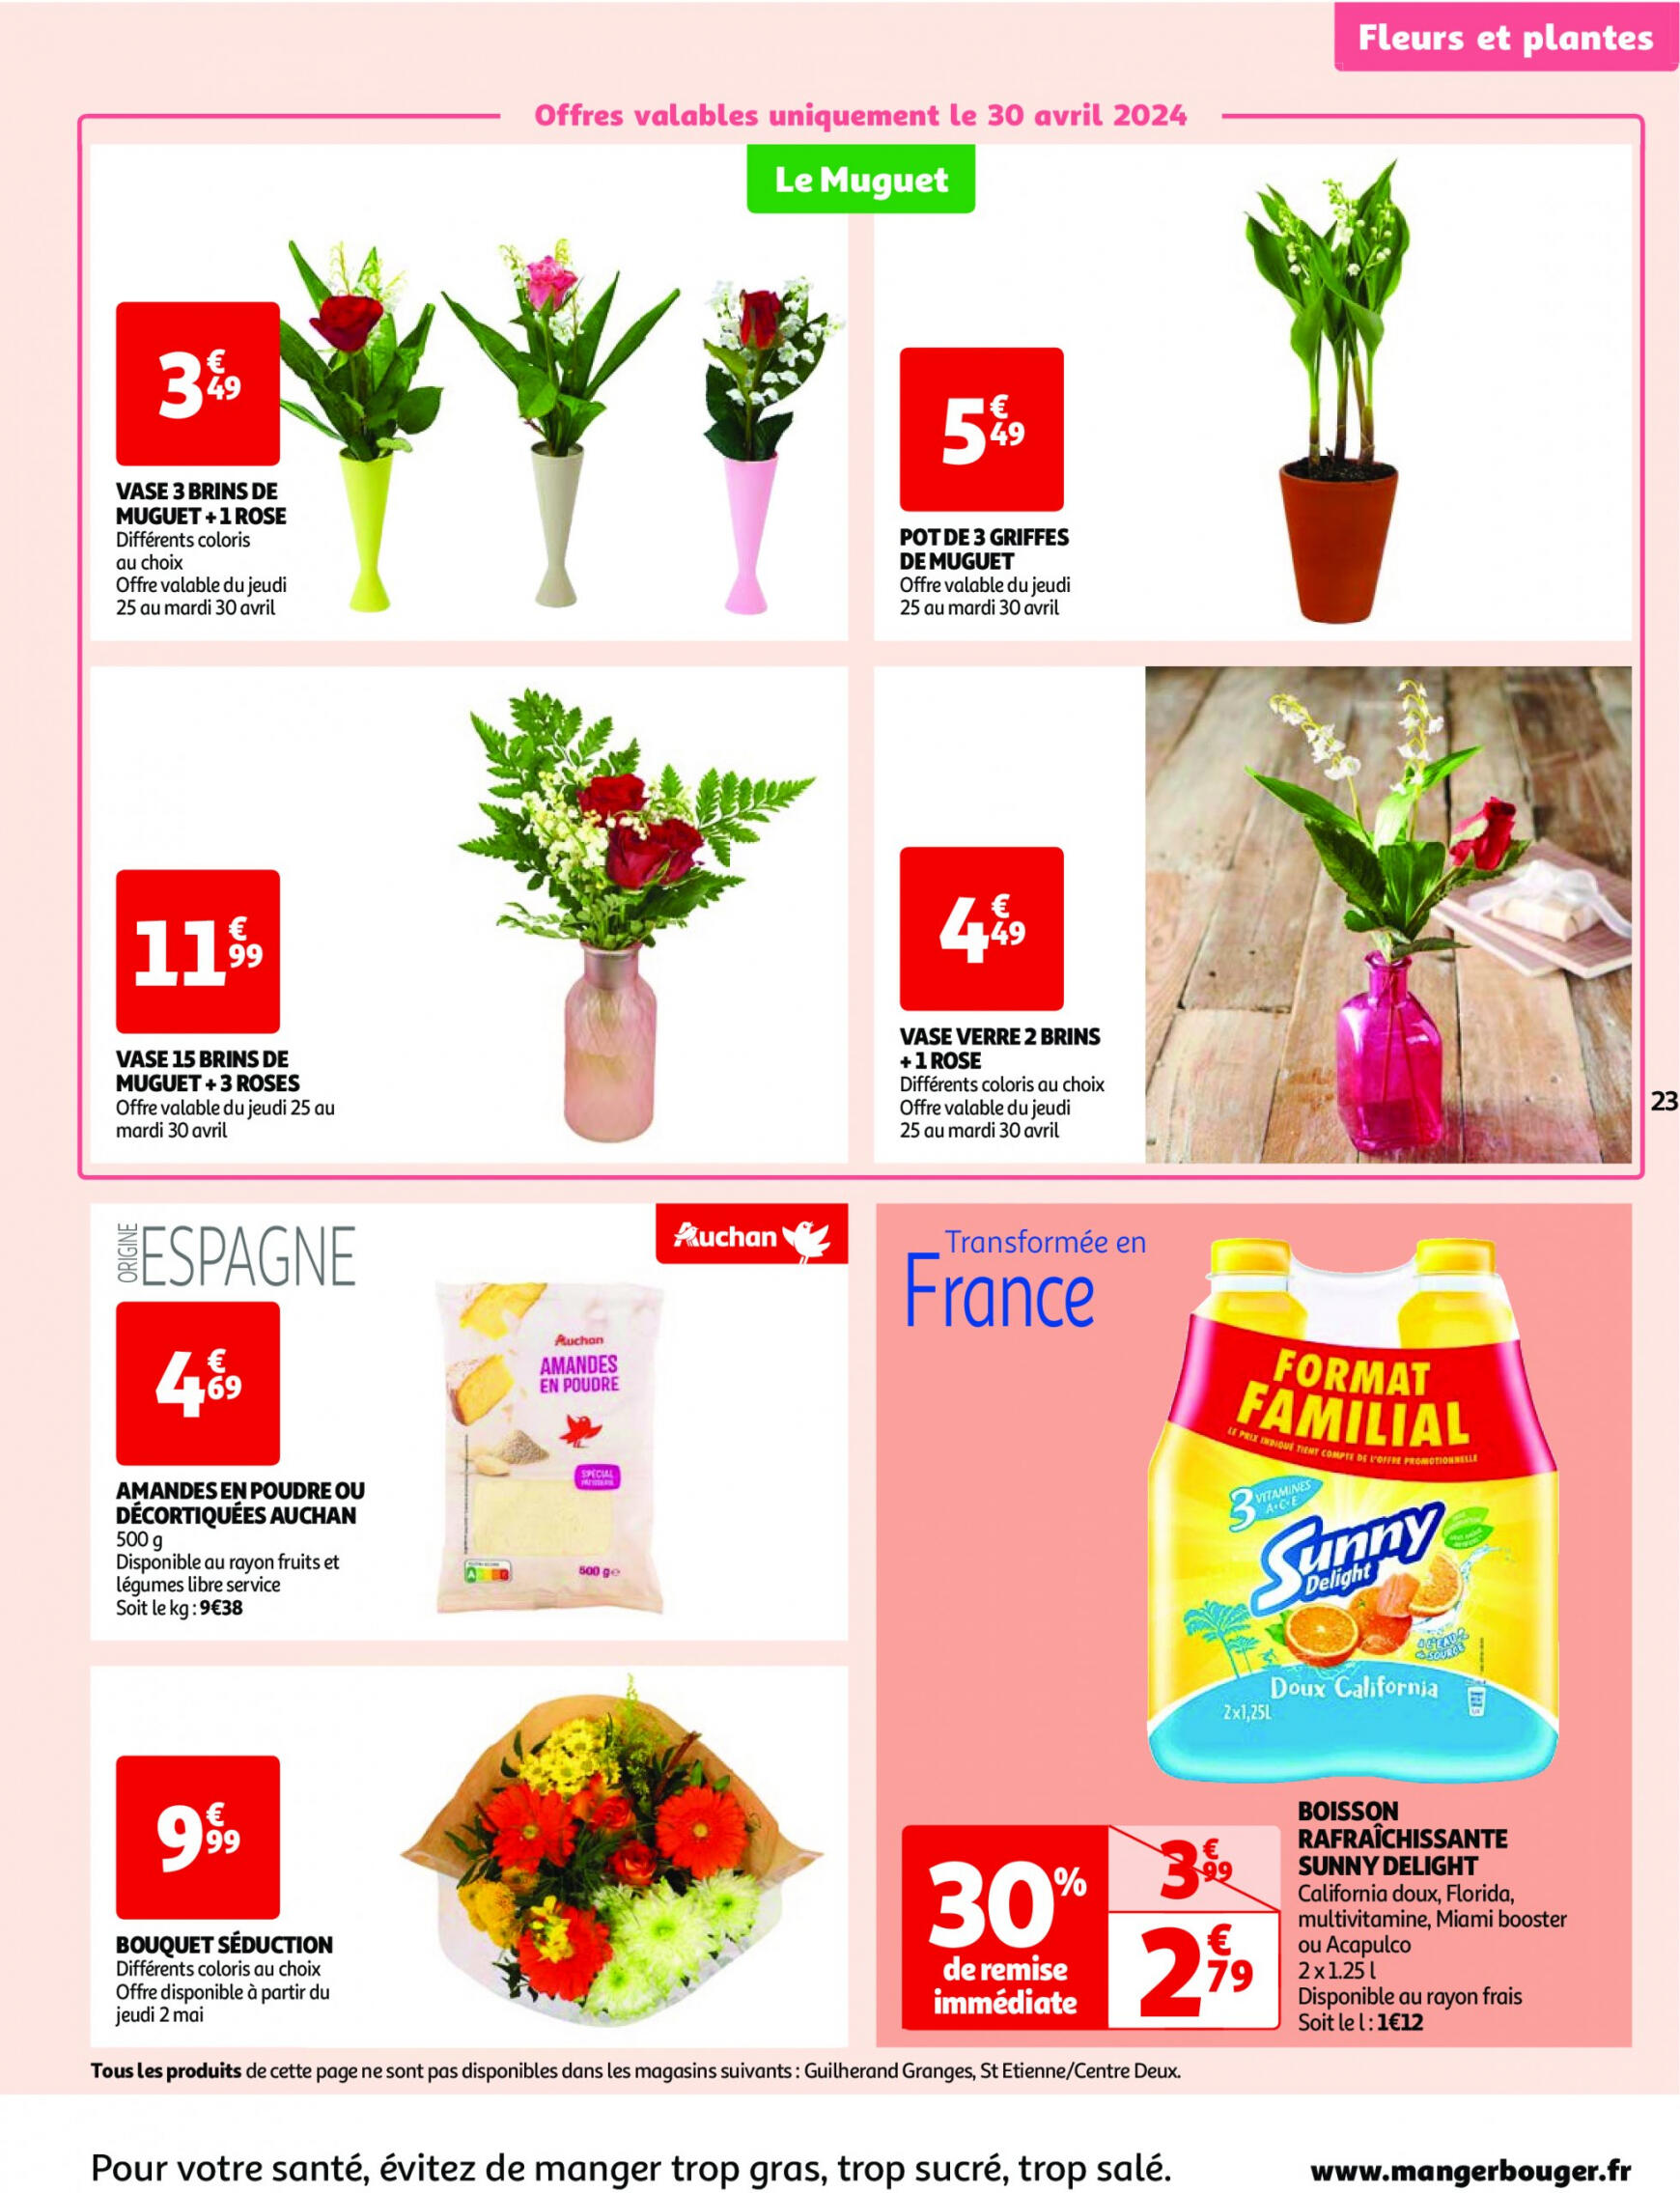 auchan - Prospectus Auchan actuel 30.04. - 06.05. - page: 23